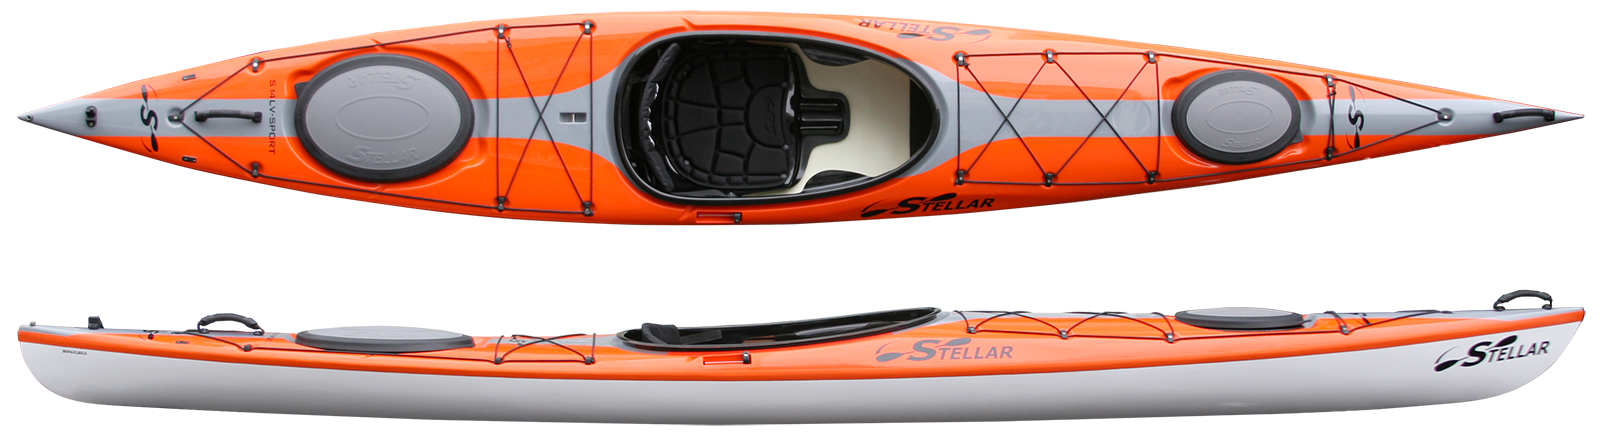 Kayaks: S14LV by Stellar Kayaks - Image 4707